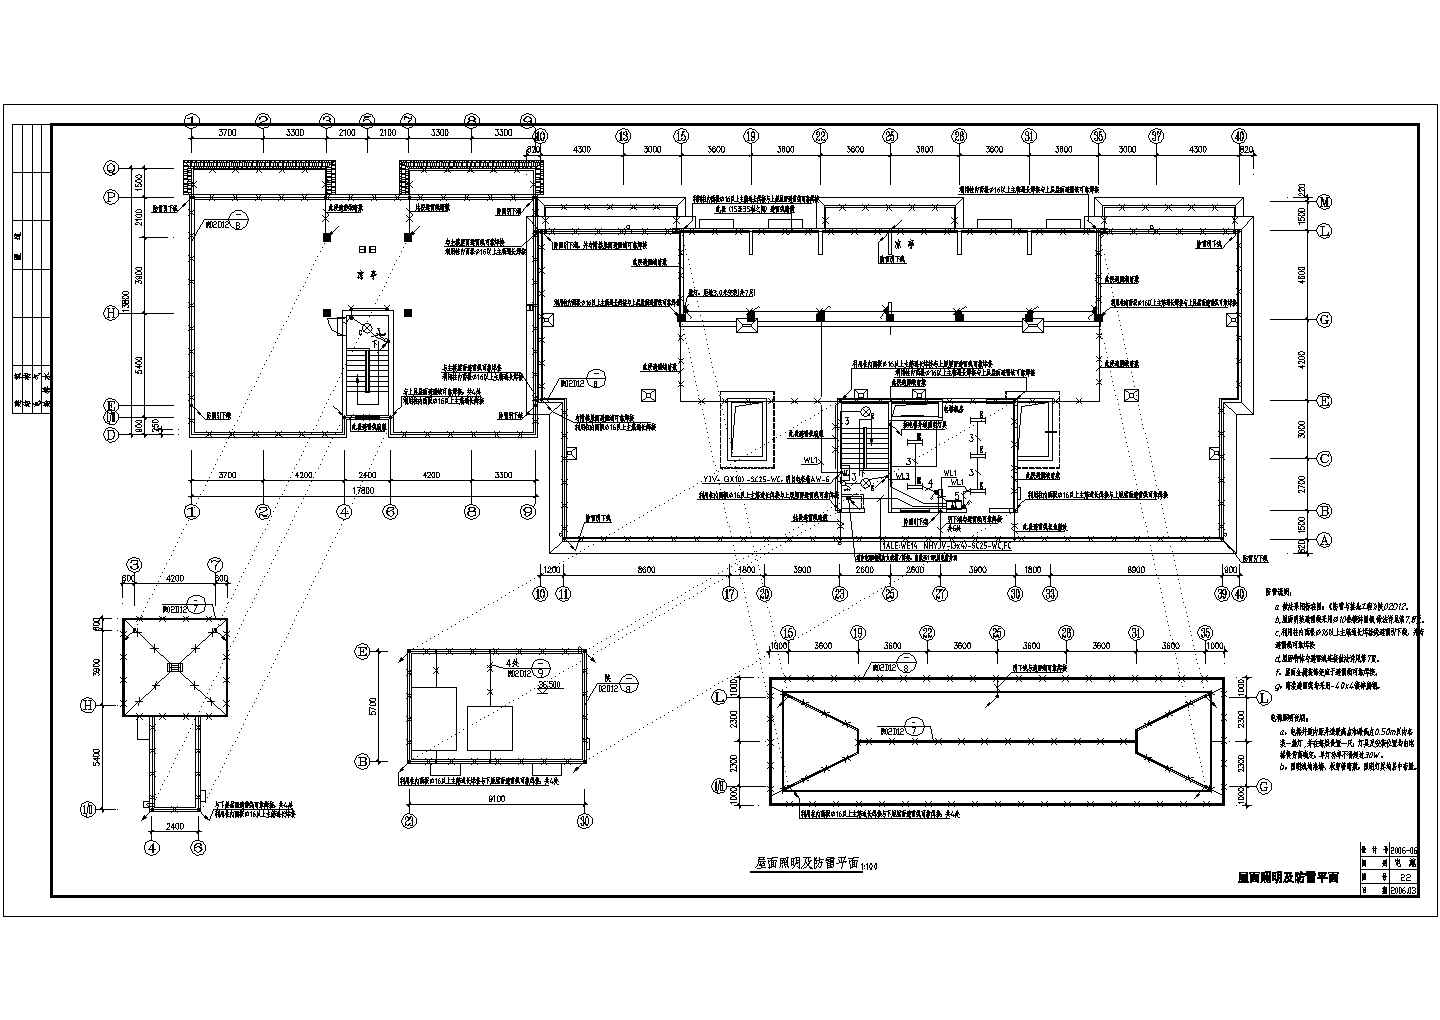 一栋12层的综合楼建筑电气设计施工图